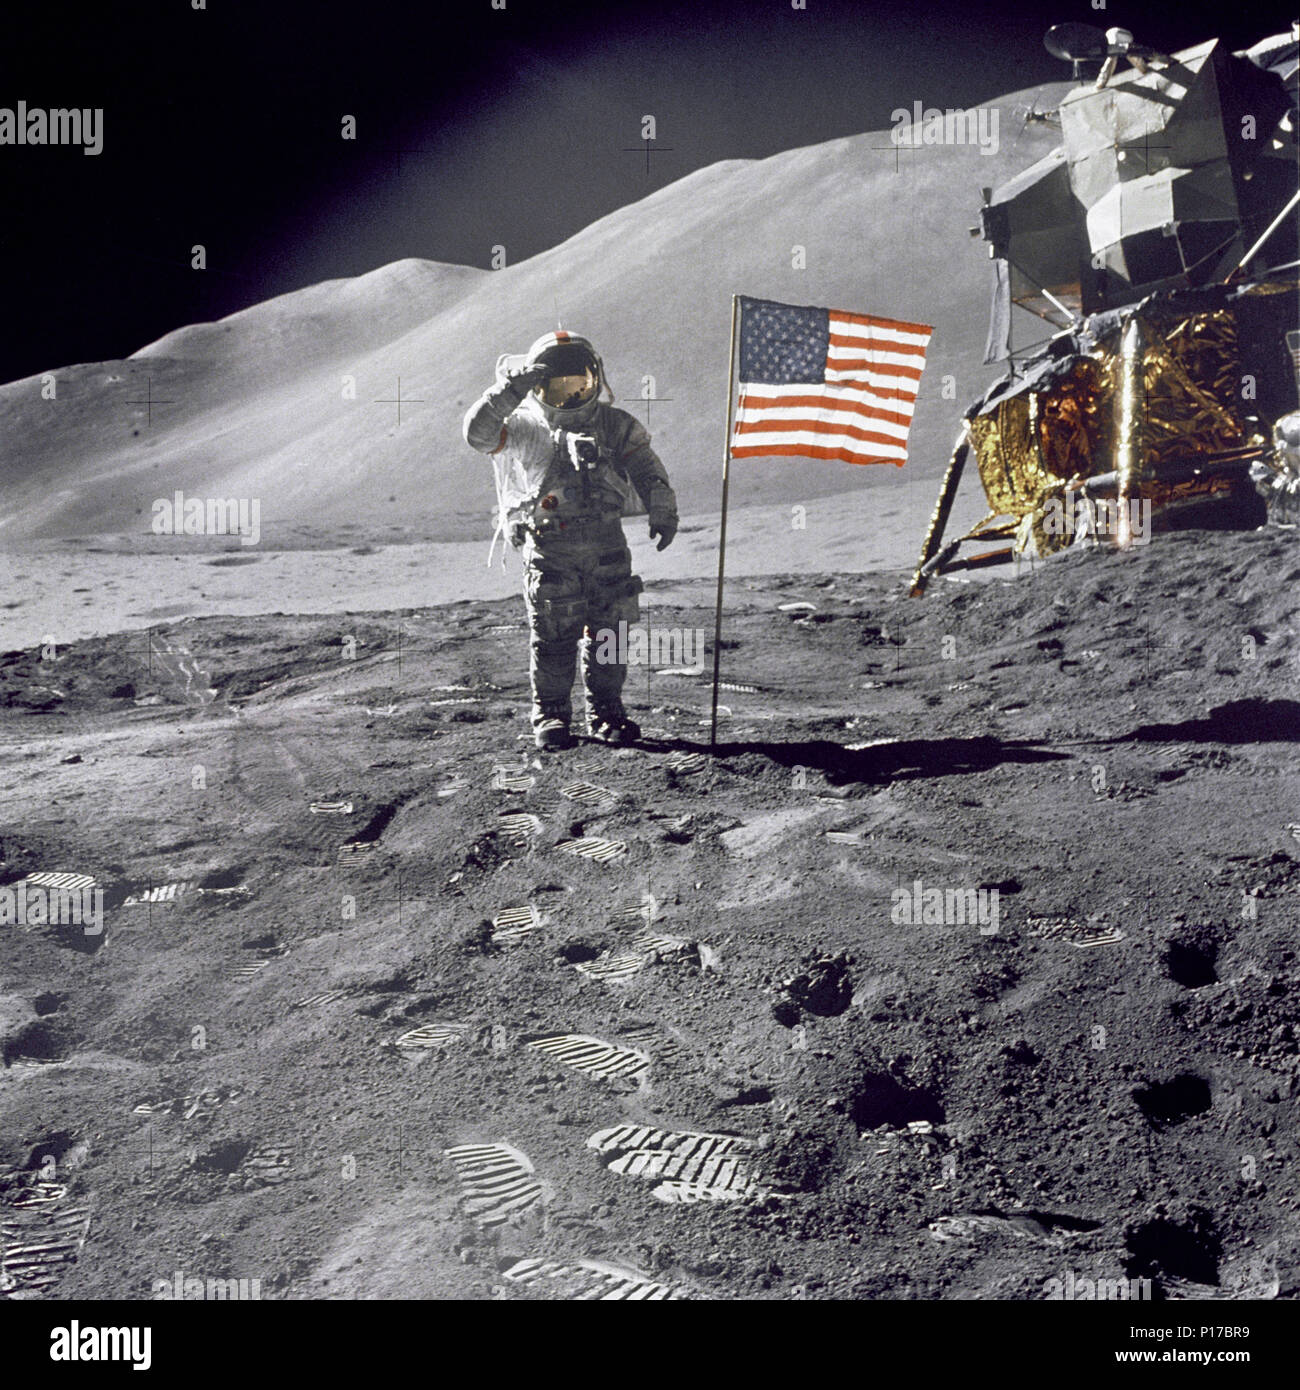 Astronaute David R. Scott, commandant, donne un salut militaire tout en se tenant à côté du drapeau des États-Unis déployée au cours de la surface lunaire Apollo 15 activité extravéhiculaire (EVA) à l'Hadley-Apennine site d'atterrissage. Le drapeau a été déployé à la fin de l'EVA-2. Le Module lunaire 'Falcon' est partiellement visible sur la droite. Hadley Delta dans l'arrière-plan s'élève à environ 4 000 mètres (environ 13 124 pieds) au-dessus de la plaine. Banque D'Images